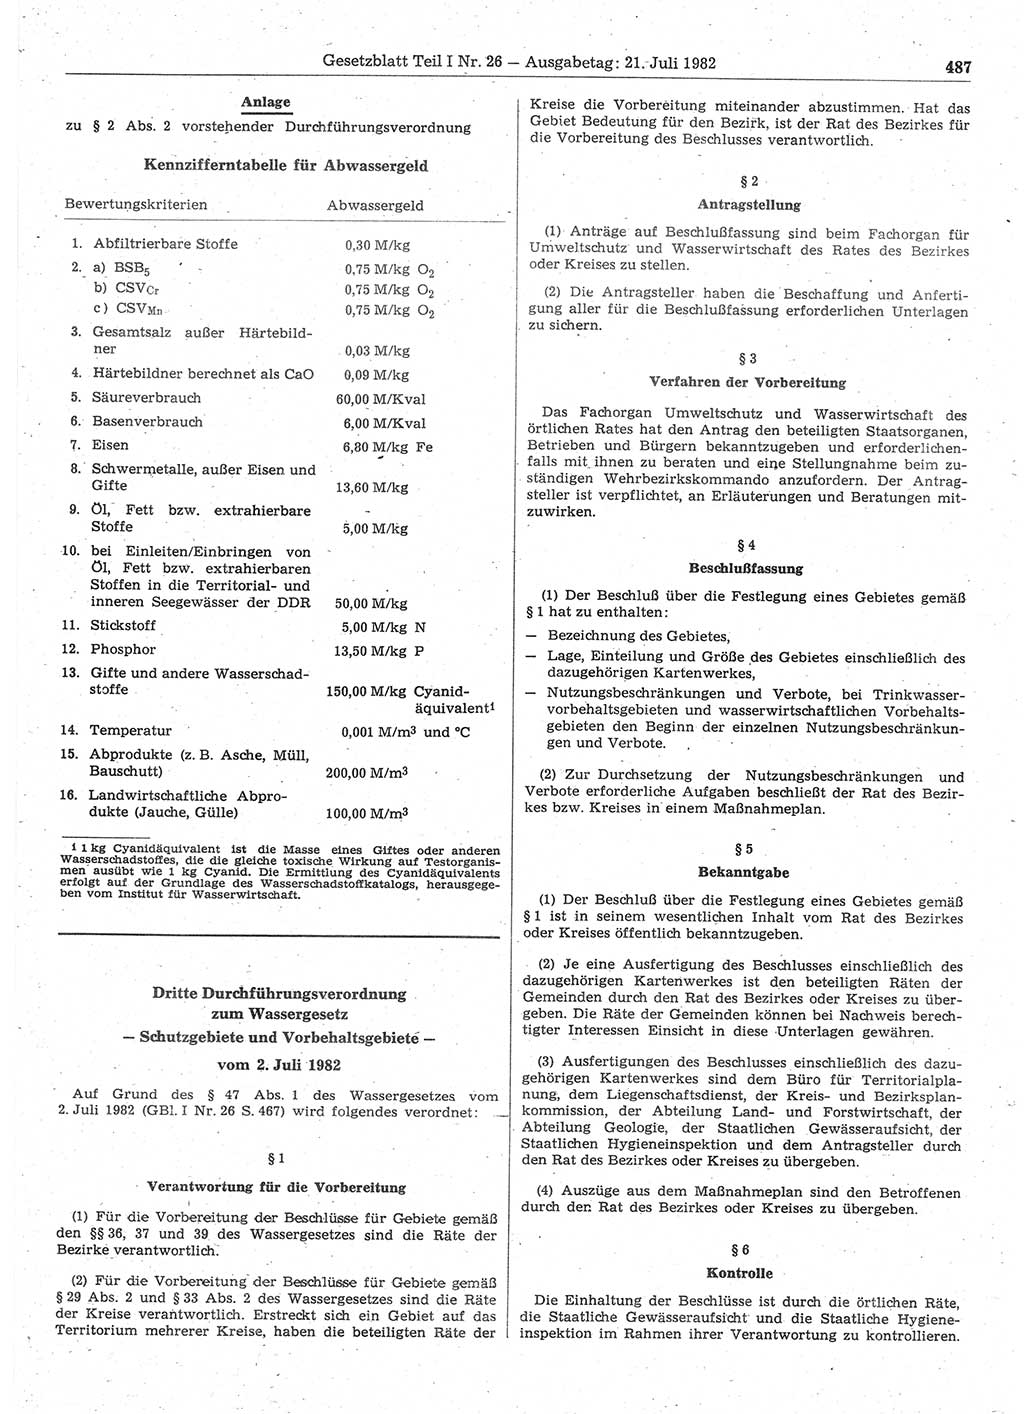 Gesetzblatt (GBl.) der Deutschen Demokratischen Republik (DDR) Teil Ⅰ 1982, Seite 487 (GBl. DDR Ⅰ 1982, S. 487)